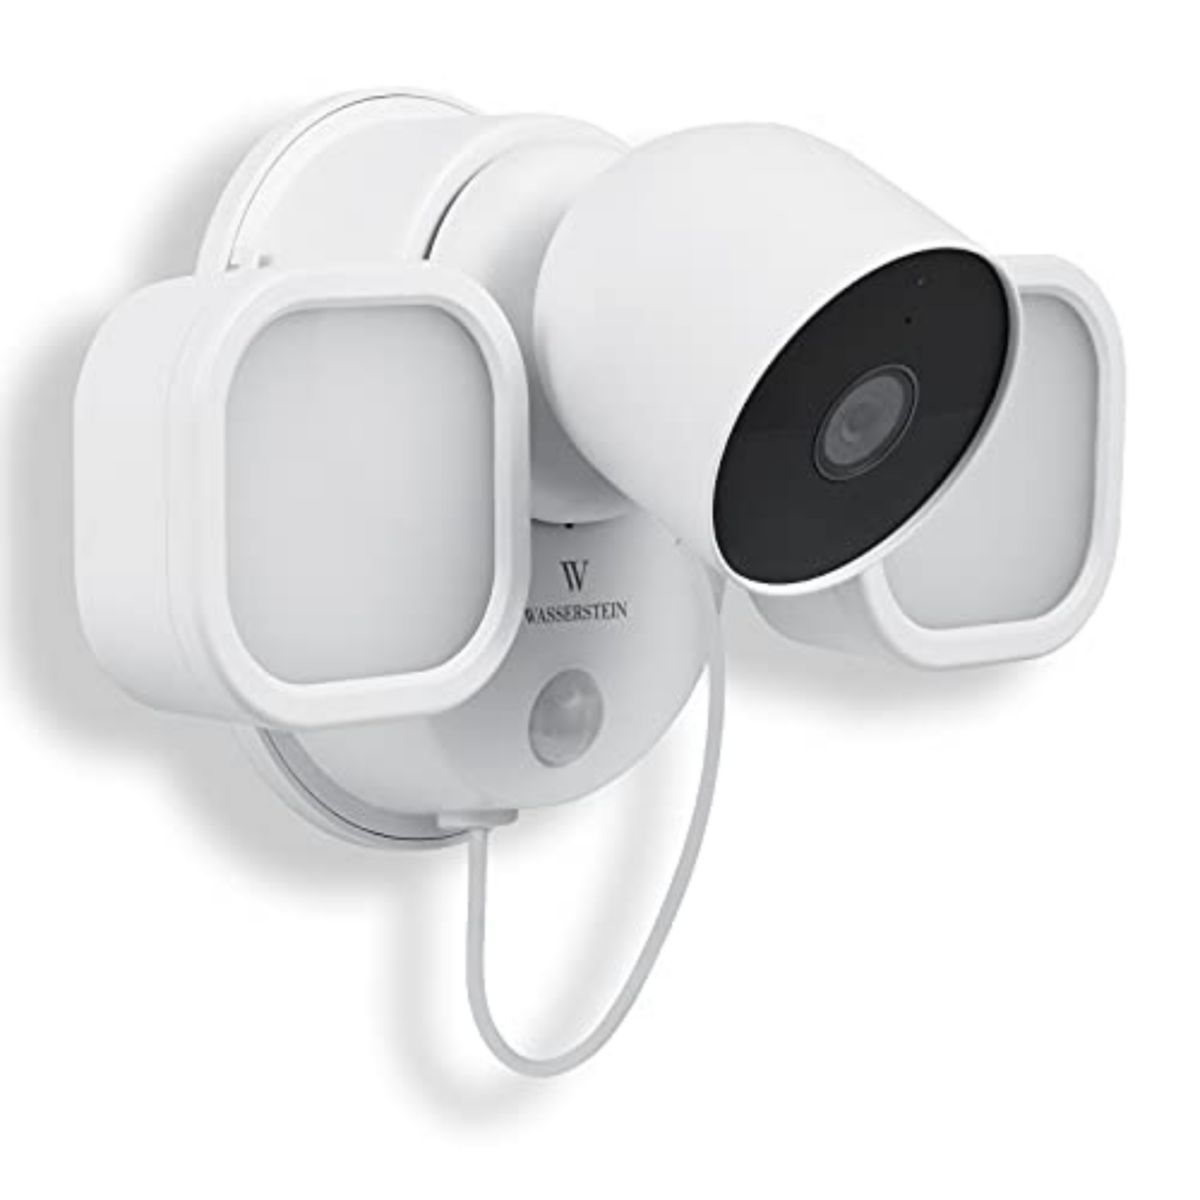 Прожектор Wasserstein 3-в-1, зарядное устройство и крепление для камеры Google Nest Cam (аккумулятор) Wasserstein